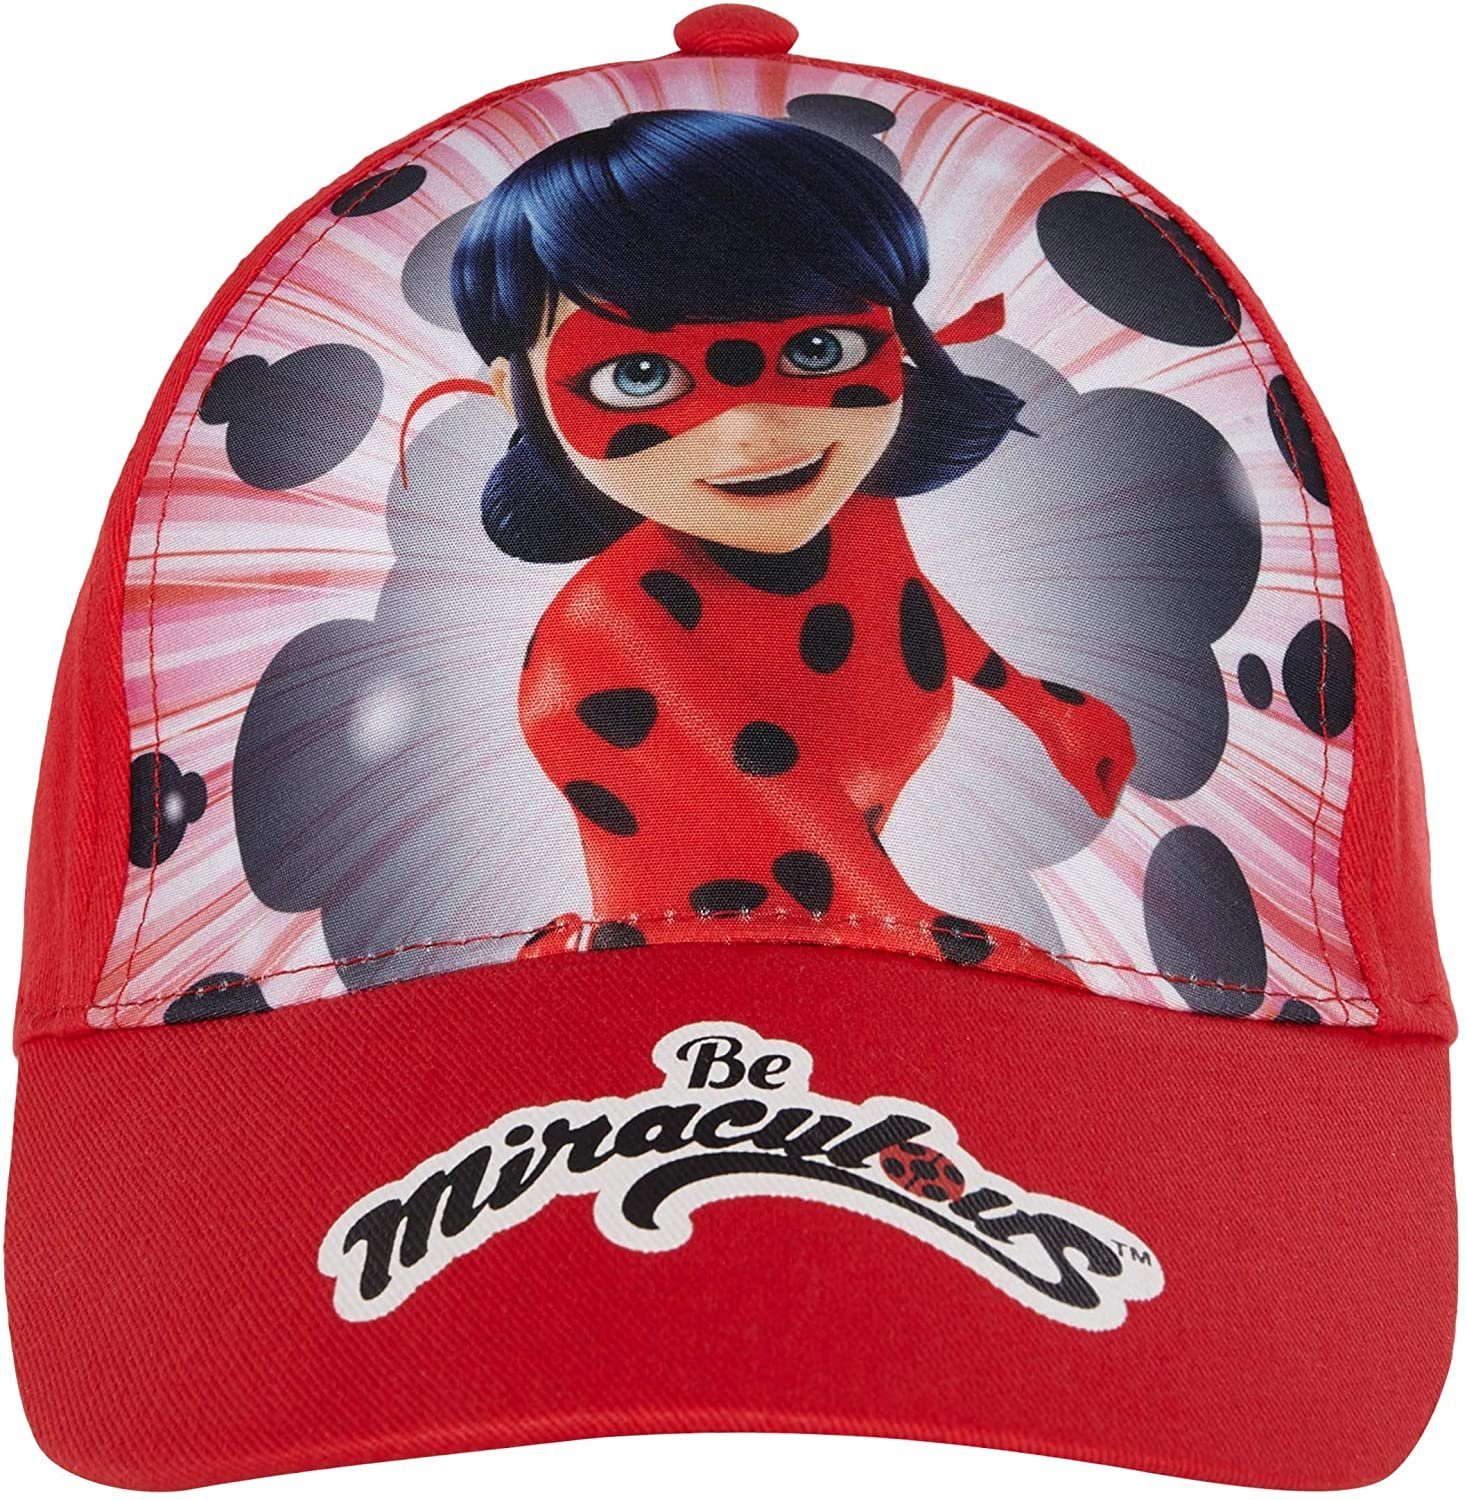 Ladybug Rot Sonnenschutz Miraculous - Ladybug Gr.52 Schirmmütze Miraculous Kita Schule Schirmmütze 54 Kinder + Baseball Cap Mädchen Mütze